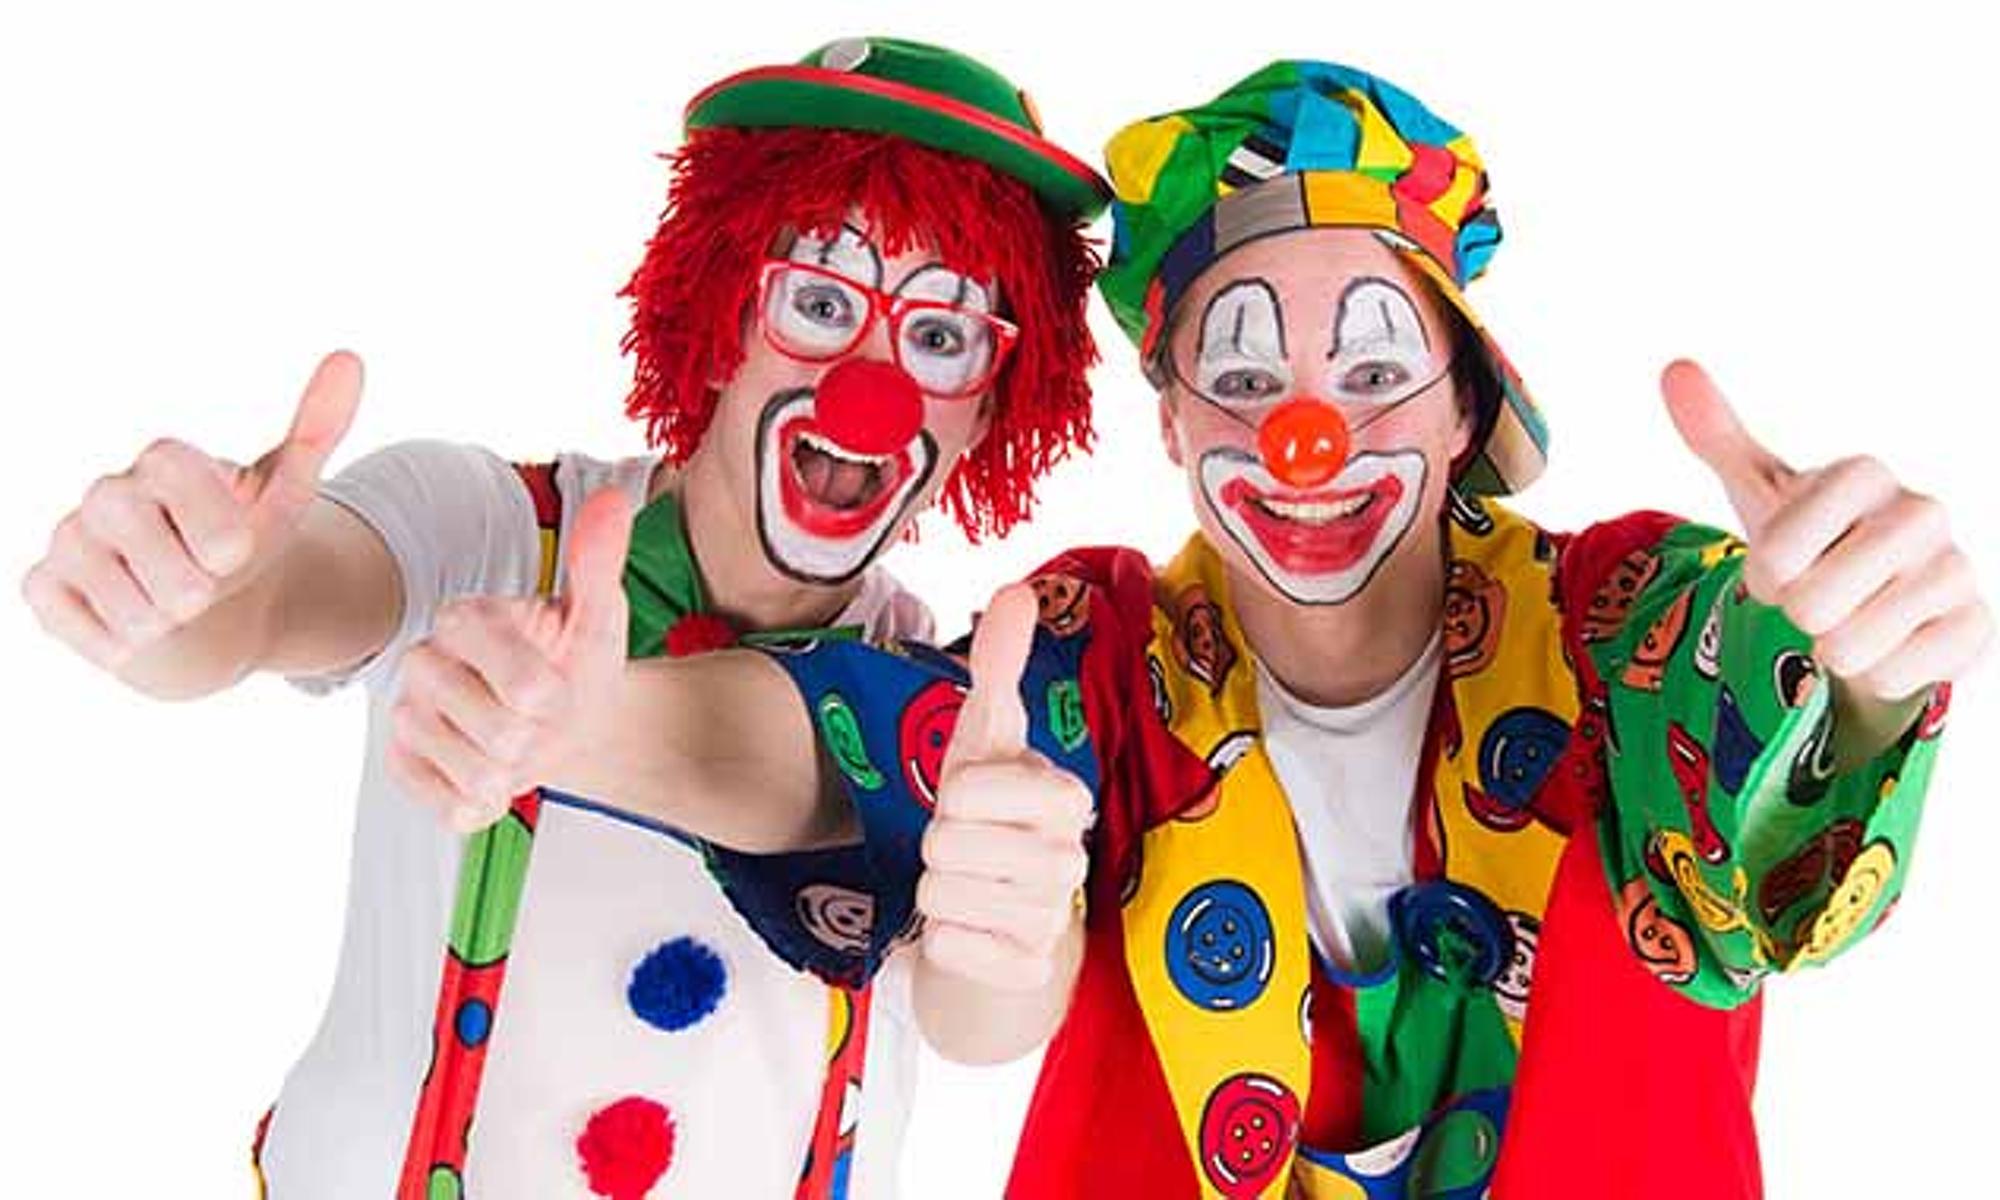 Die "Clowns im Dienst" muntern Kinder in Kliniken auf.